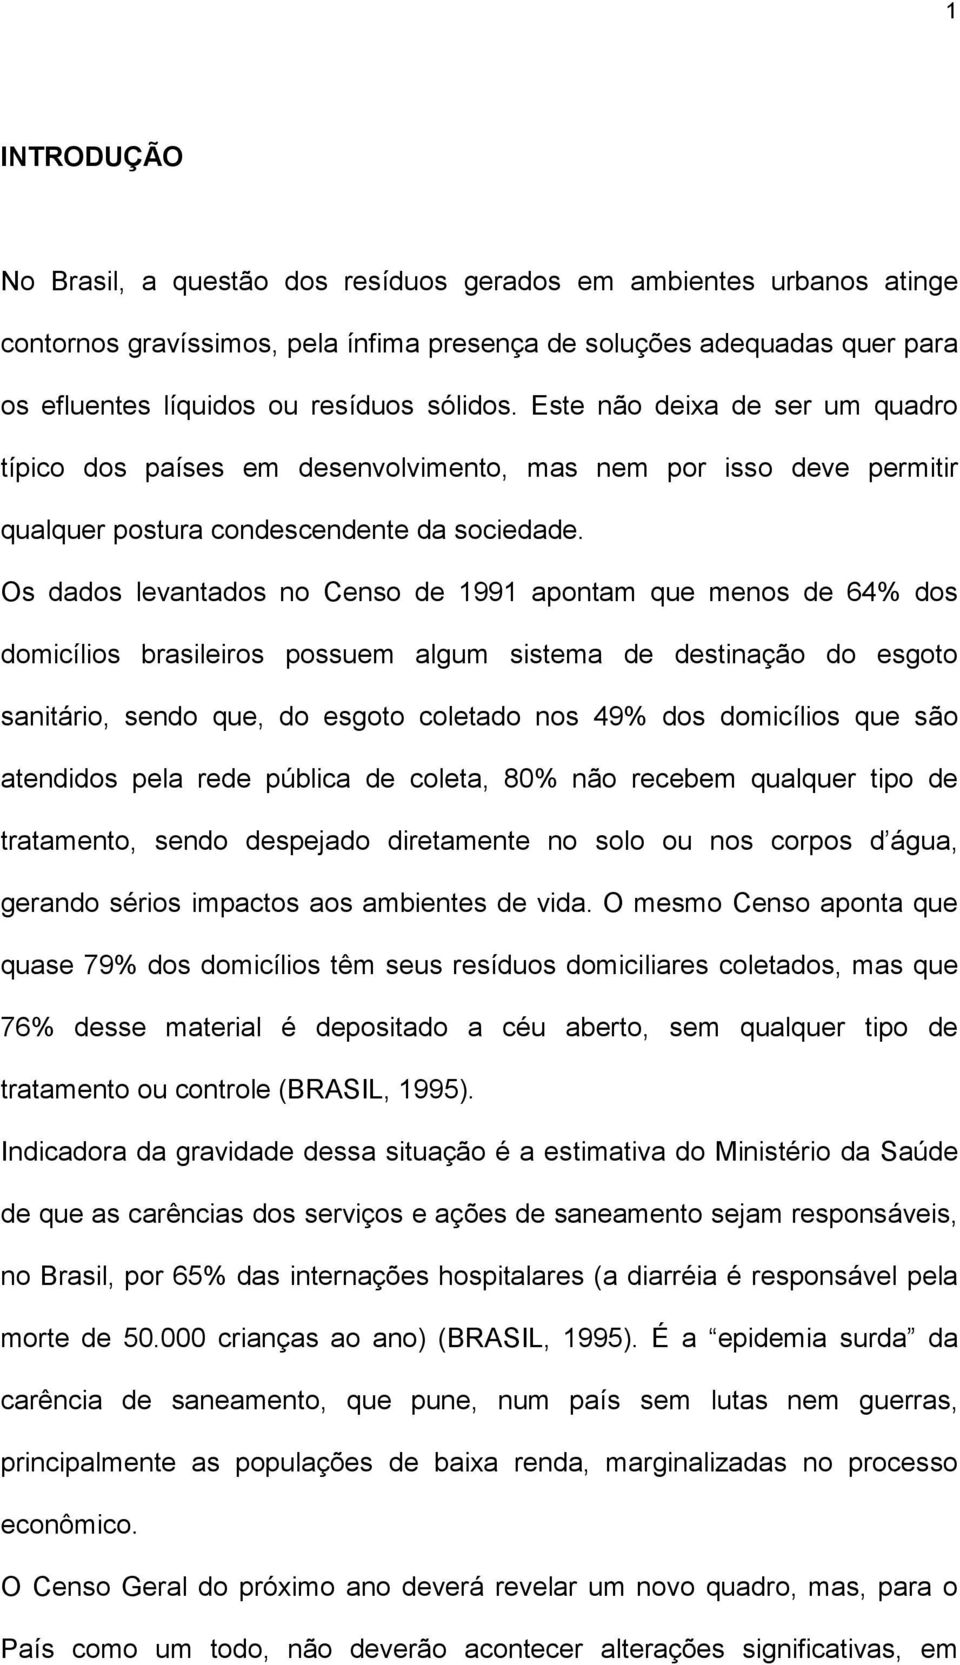 Os dados levantados no Censo de 1991 apontam que menos de 64% dos domicílios brasileiros possuem algum sistema de destinação do esgoto sanitário, sendo que, do esgoto coletado nos 49% dos domicílios